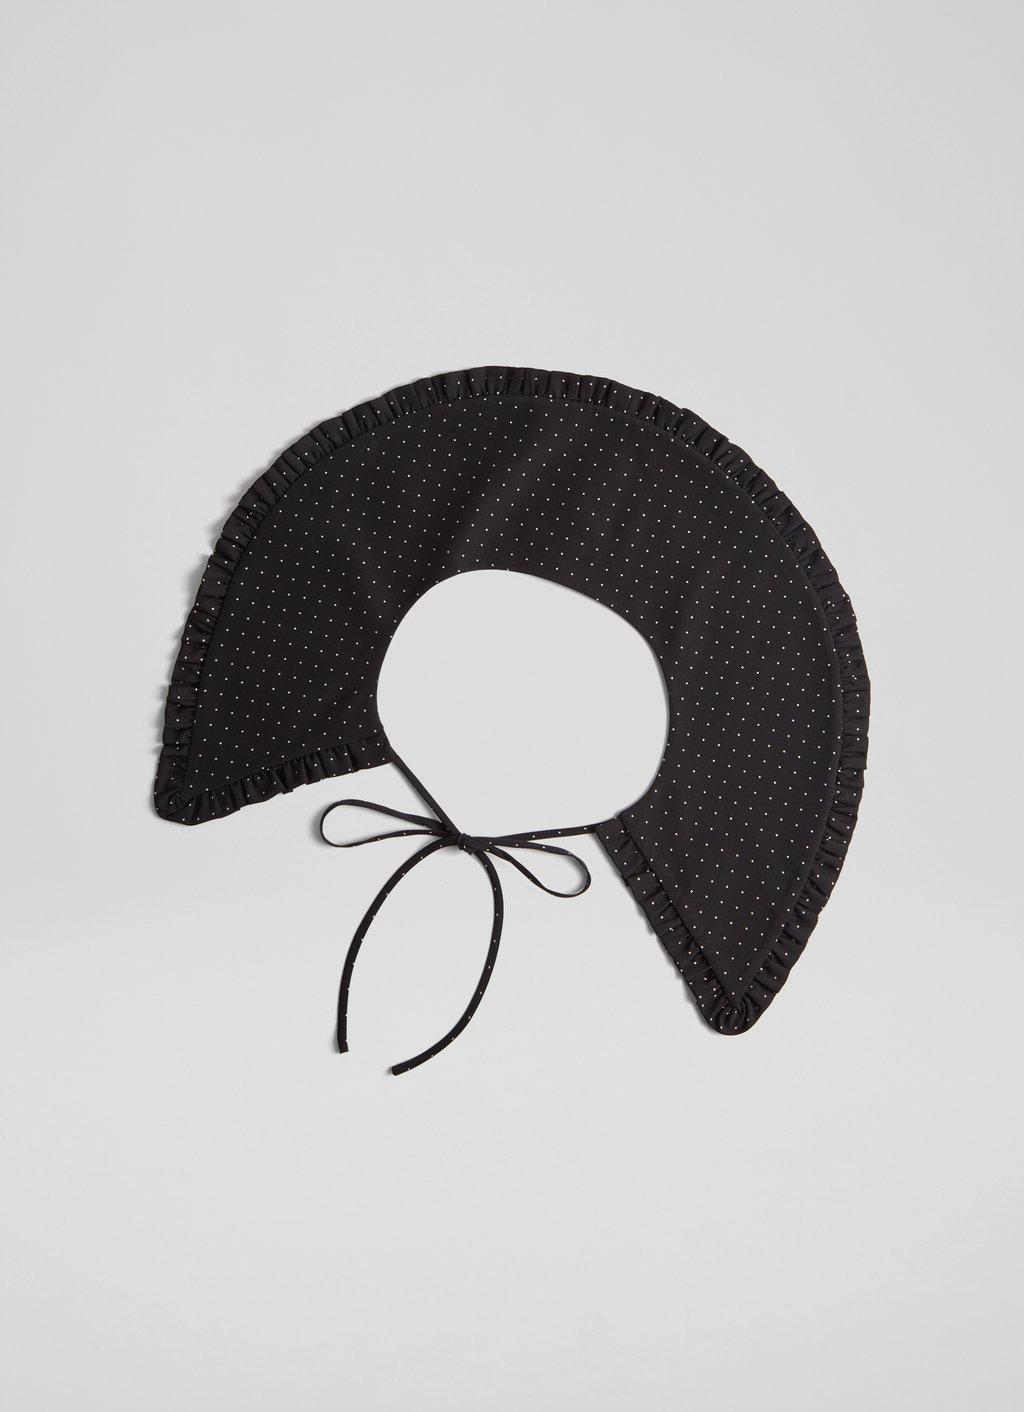 Adele Bag - Black - Leather Shoulder Bag – Escudero & Co